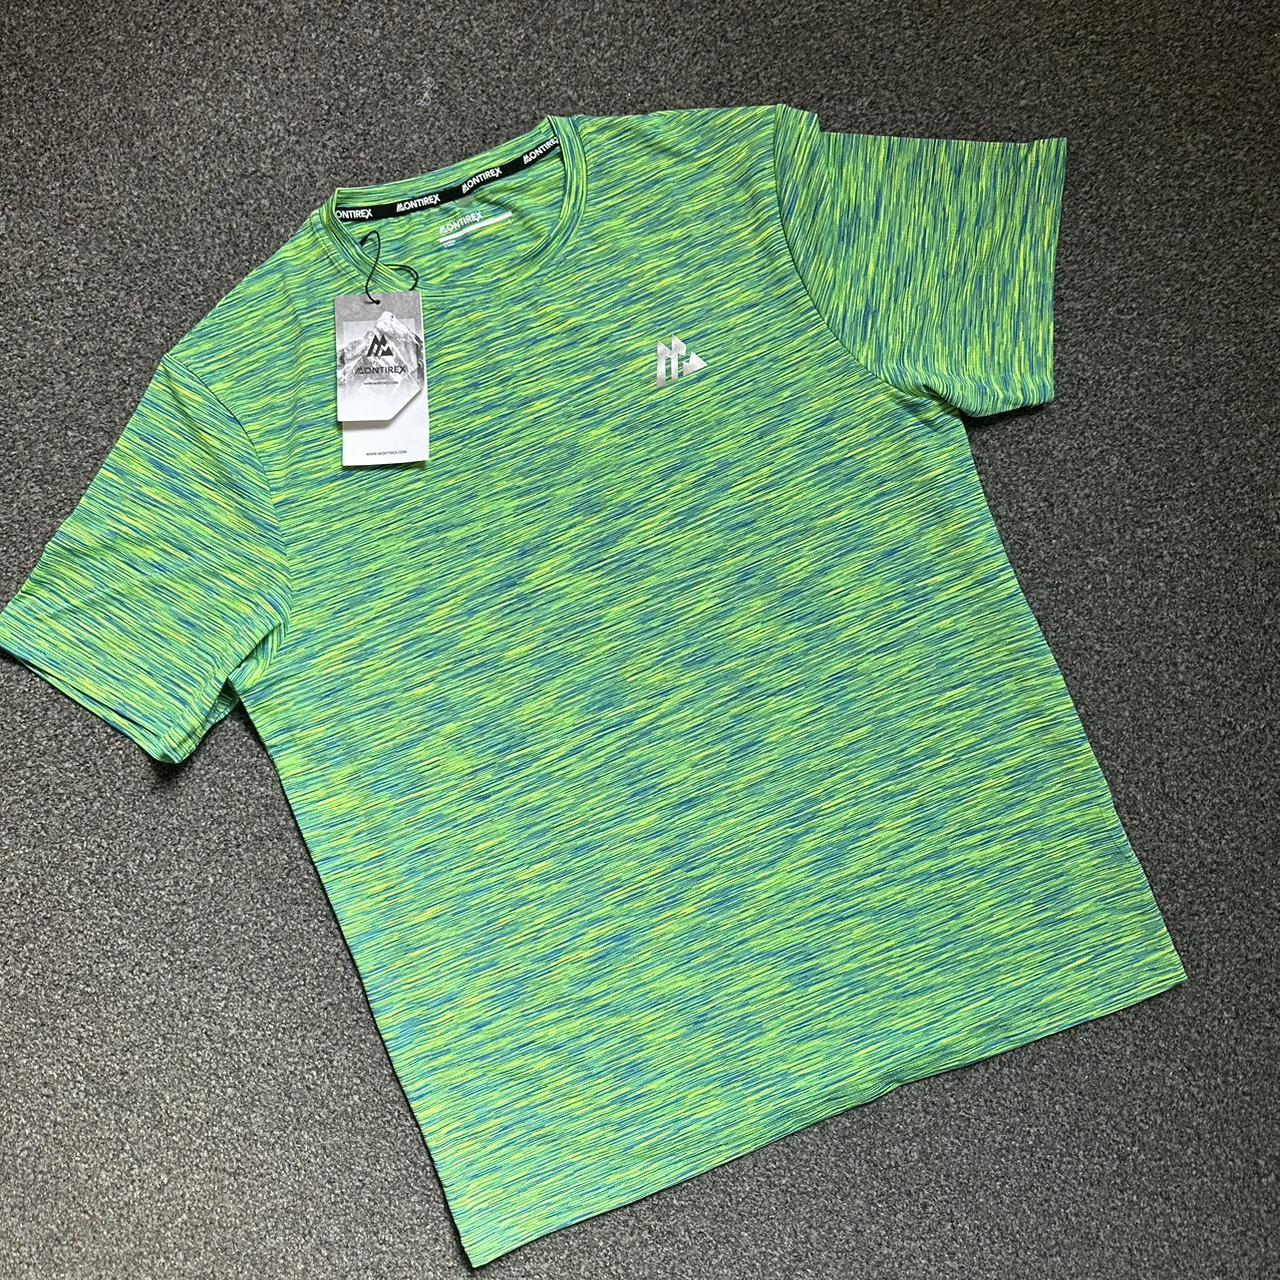 Montirex mens Trail 2.0 T-Shirt OG Neon/Green... - Depop